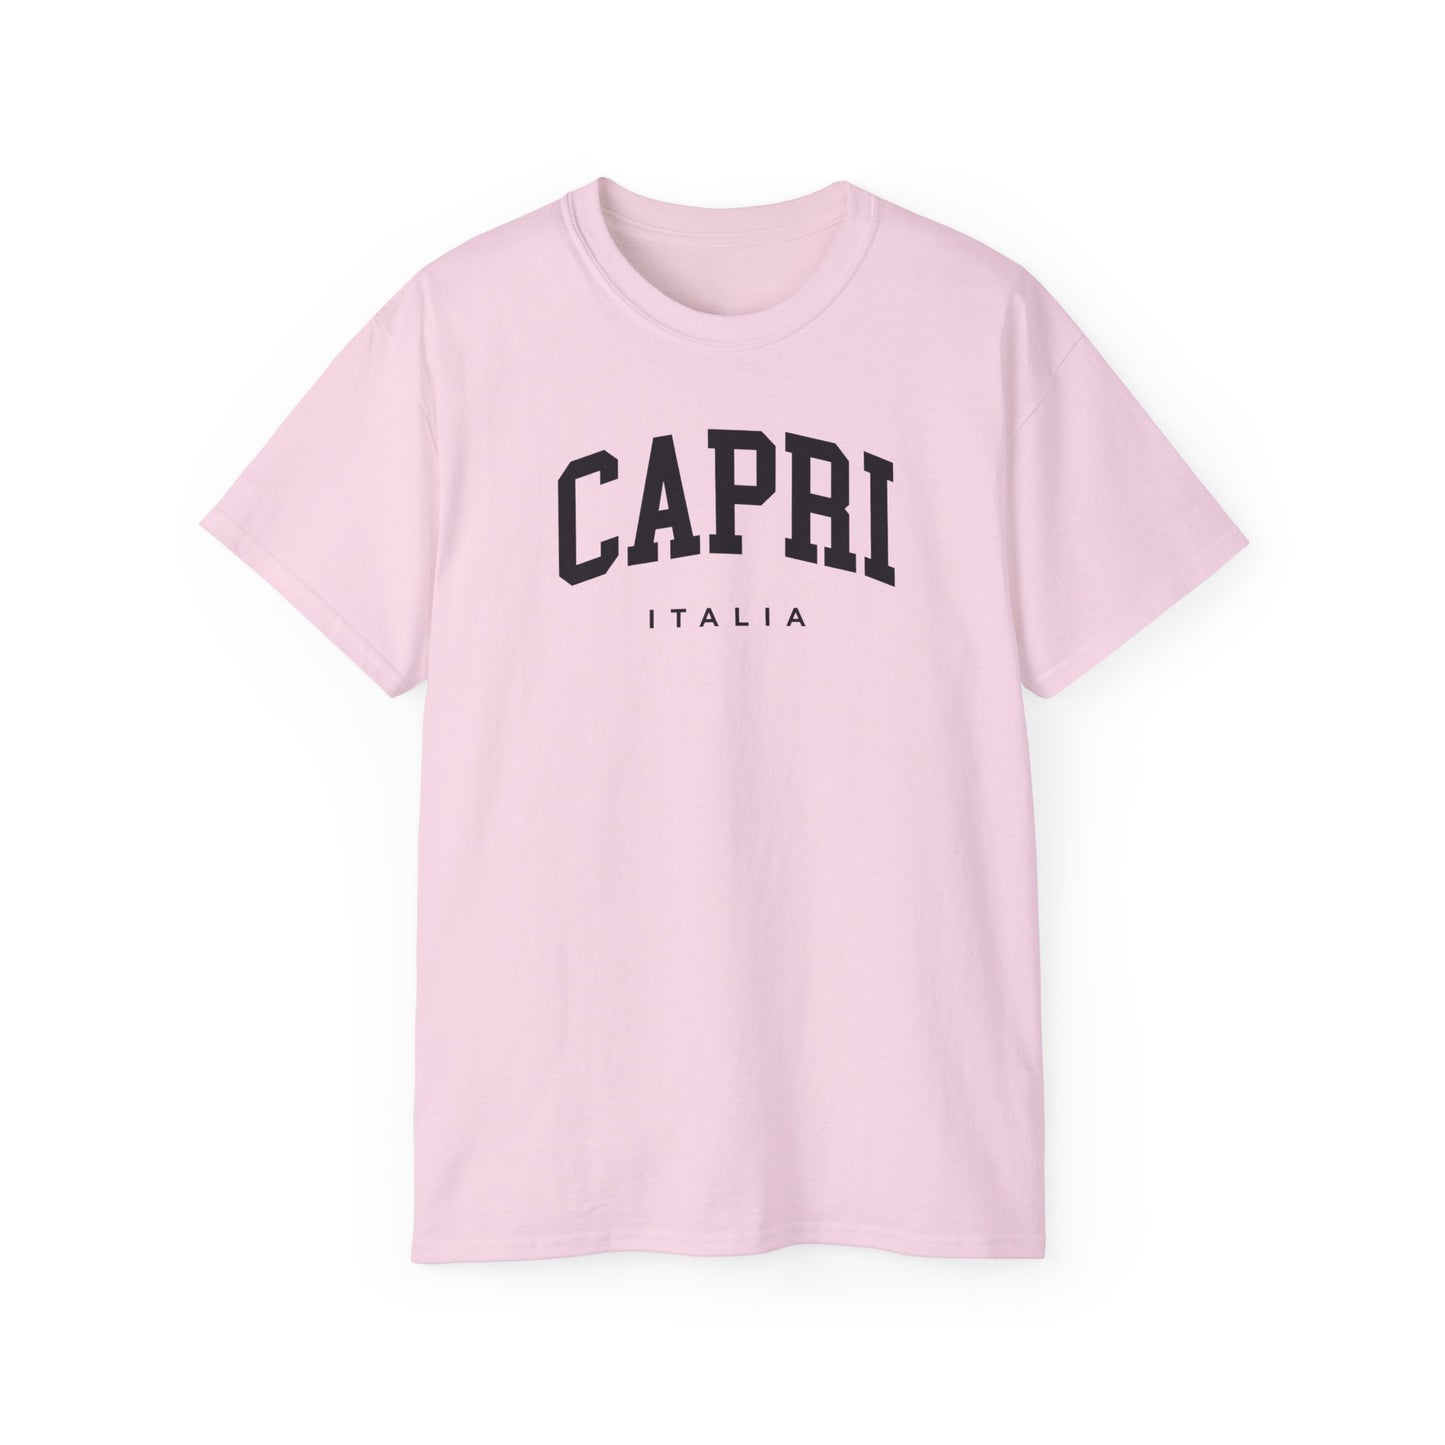 Capri Italy Tee